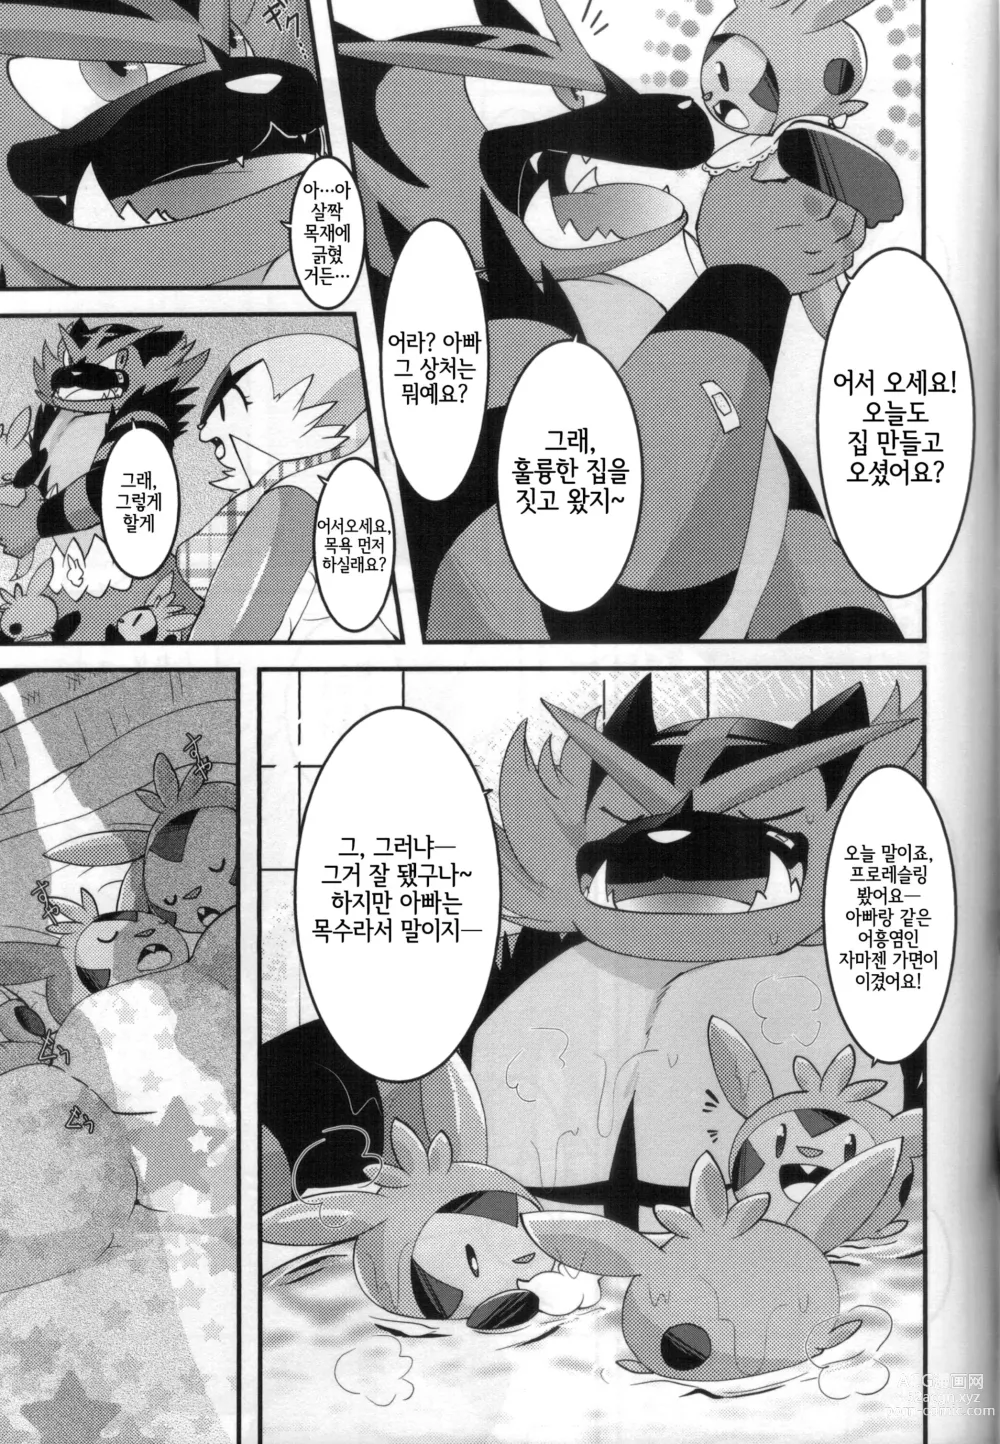 Page 6 of doujinshi 아빠도 엄마한테 어리광 부리고 싶어!